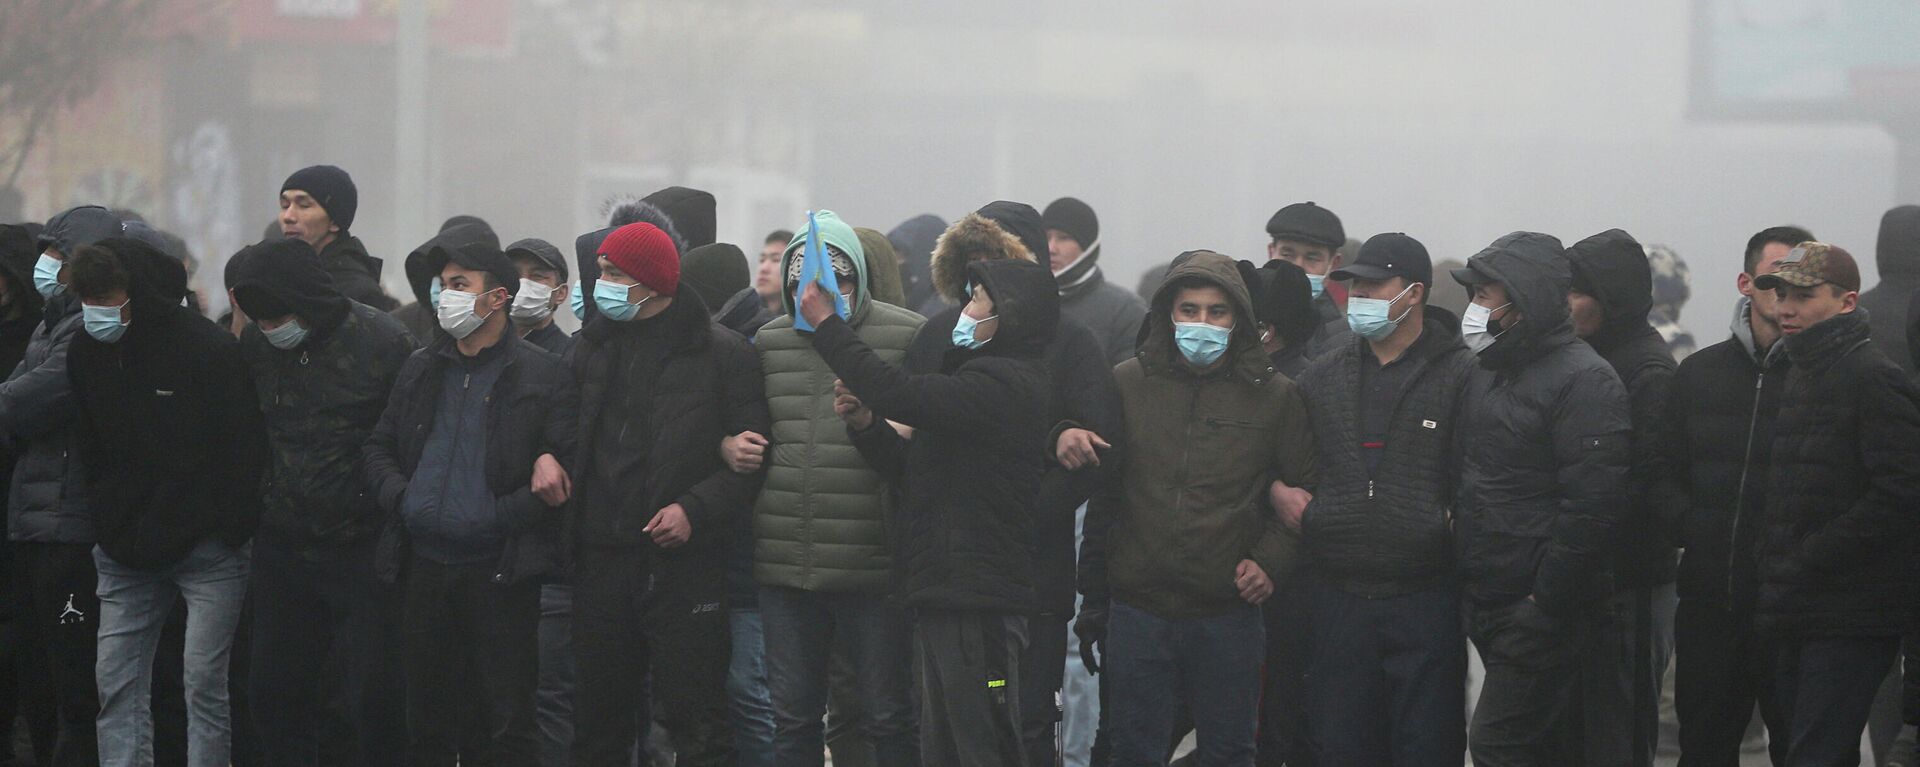 Демонстранты принимают участие в акции протеста, вызванной повышением цен на газ в Алматы, Казахстан, 5 января 2022 года - Sputnik Кыргызстан, 1920, 05.01.2022